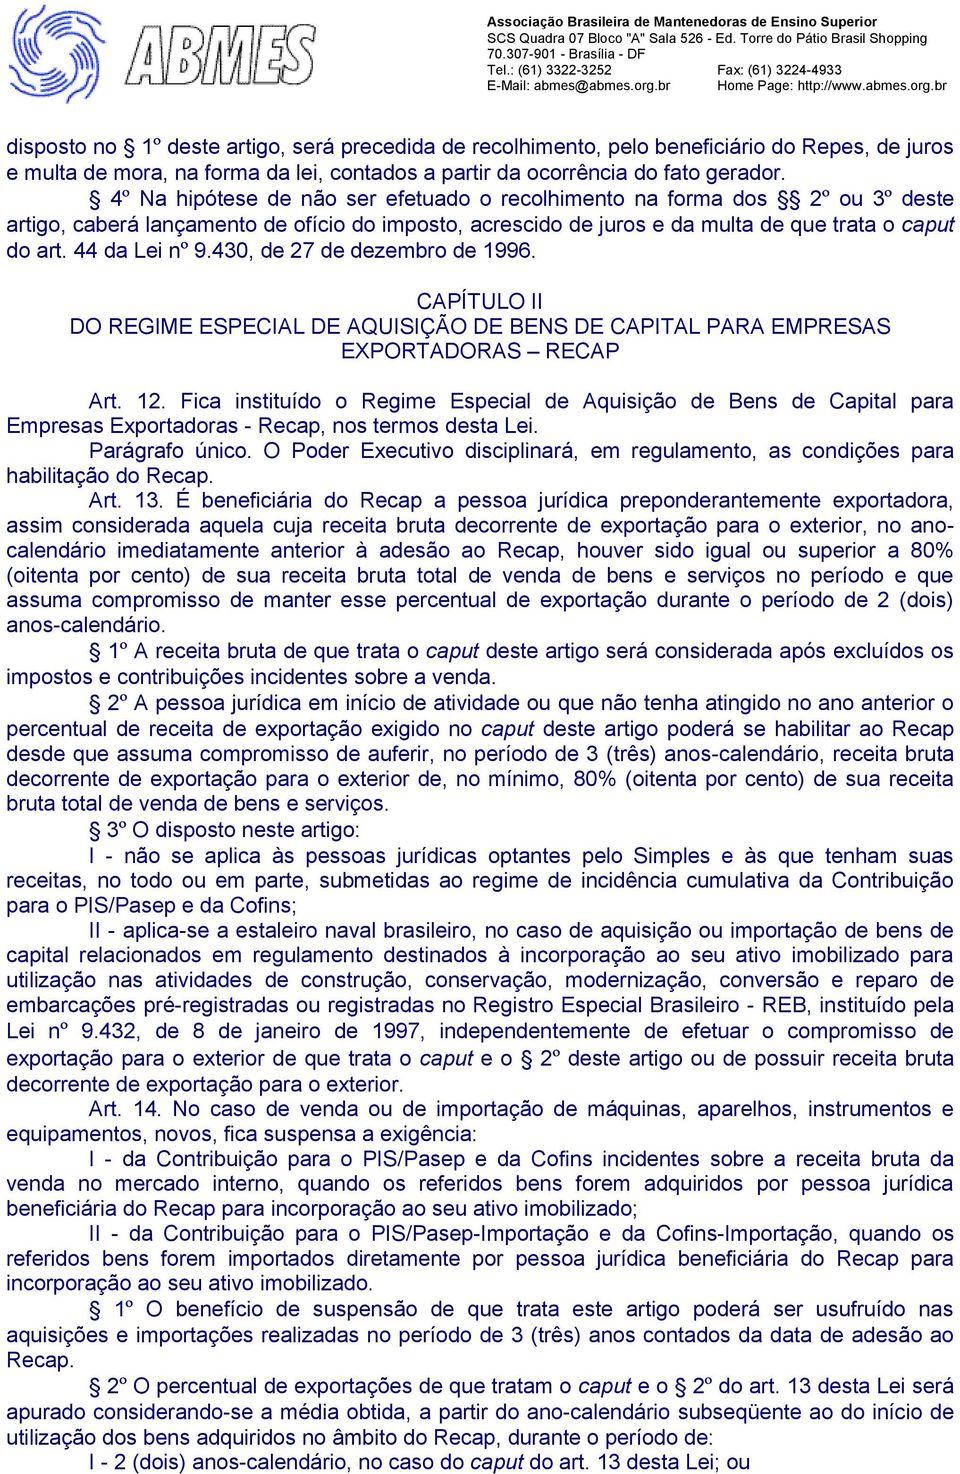 430, de 27 de dezembro de 1996. CAPÍTULO II DO REGIME ESPECIAL DE AQUISIÇÃO DE BENS DE CAPITAL PARA EMPRESAS EXPORTADORAS RECAP Art. 12.